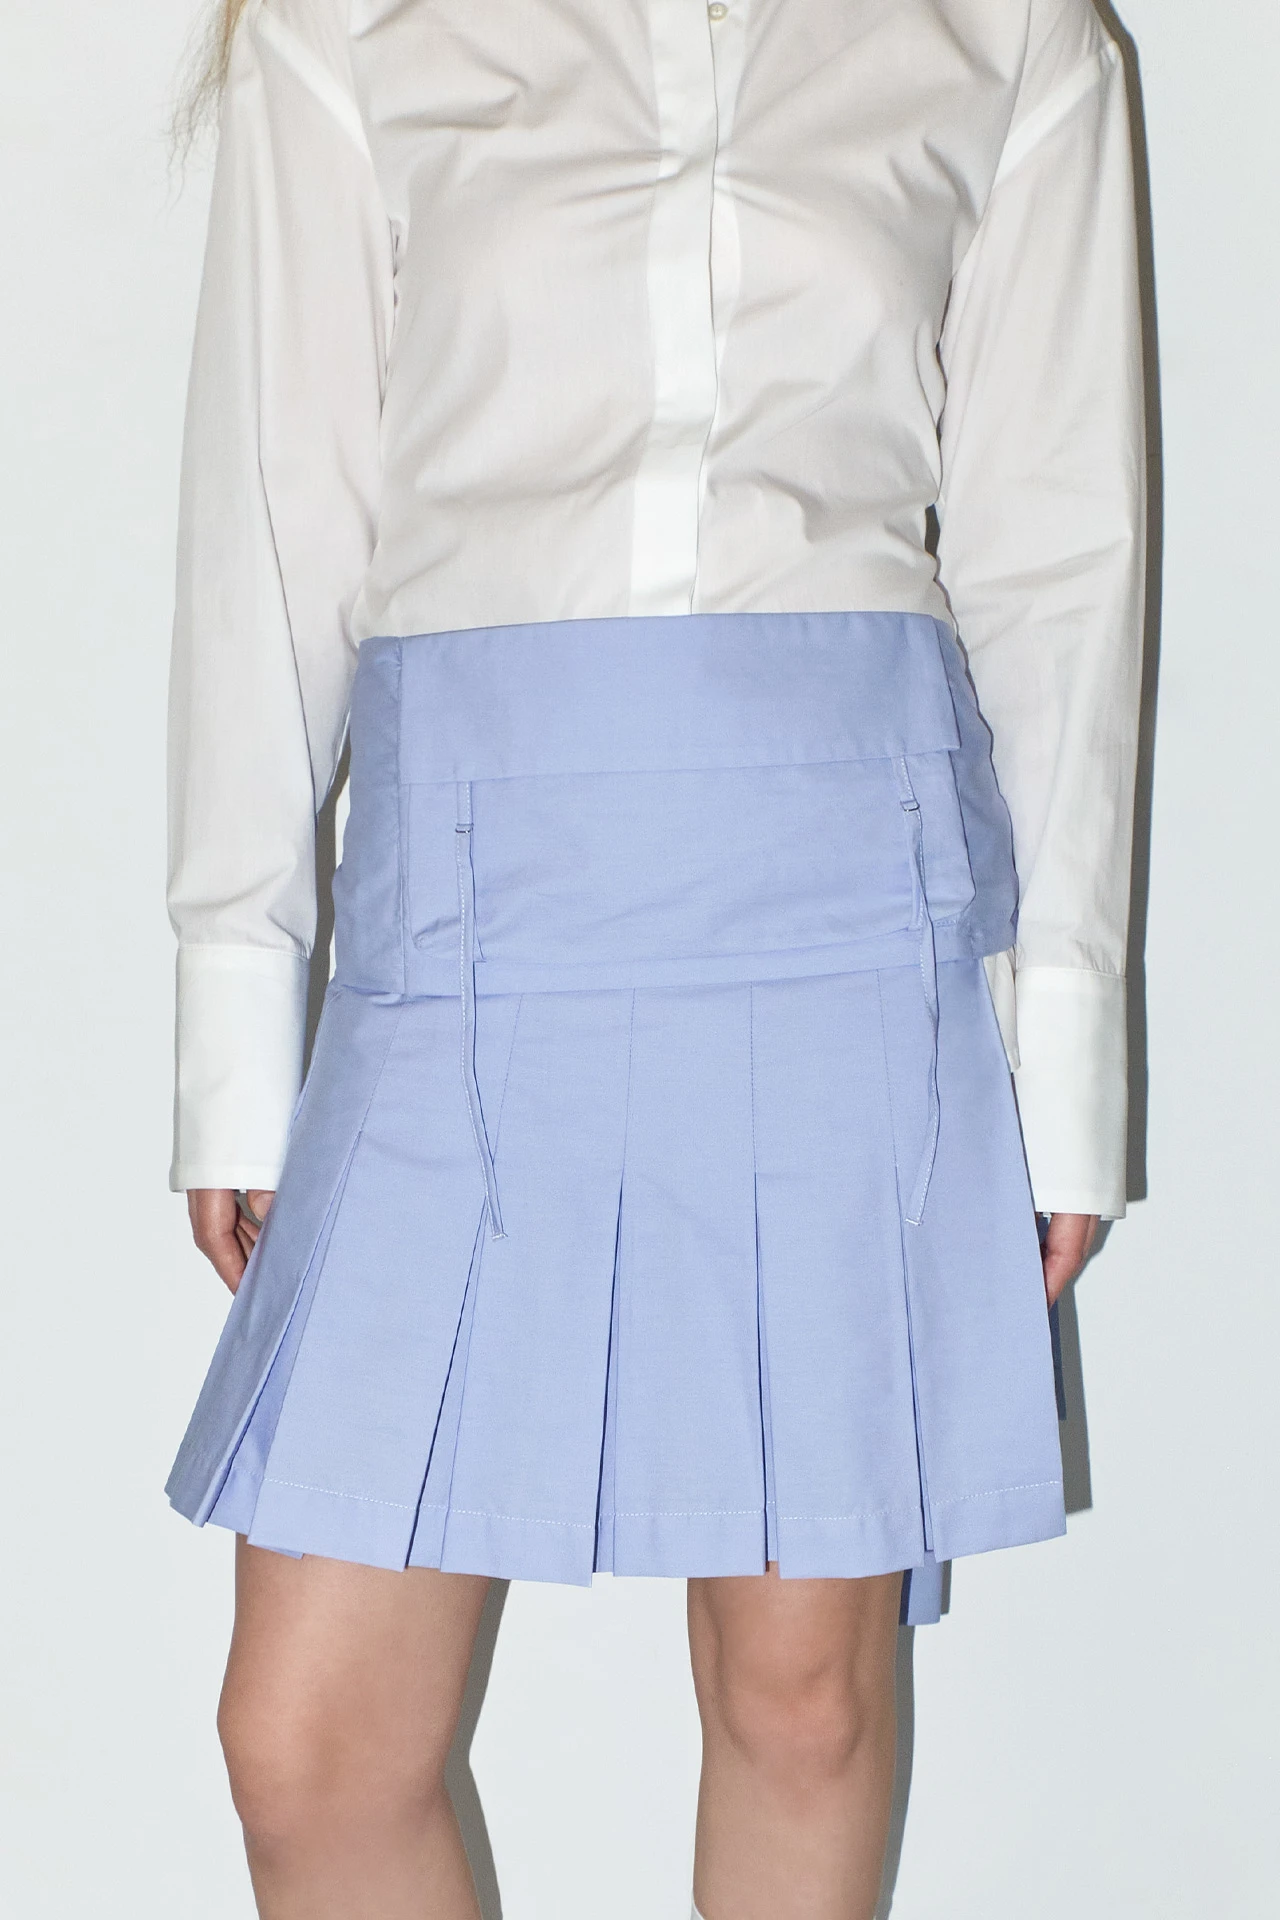 EC-miista-richelle-blue-skirt-02